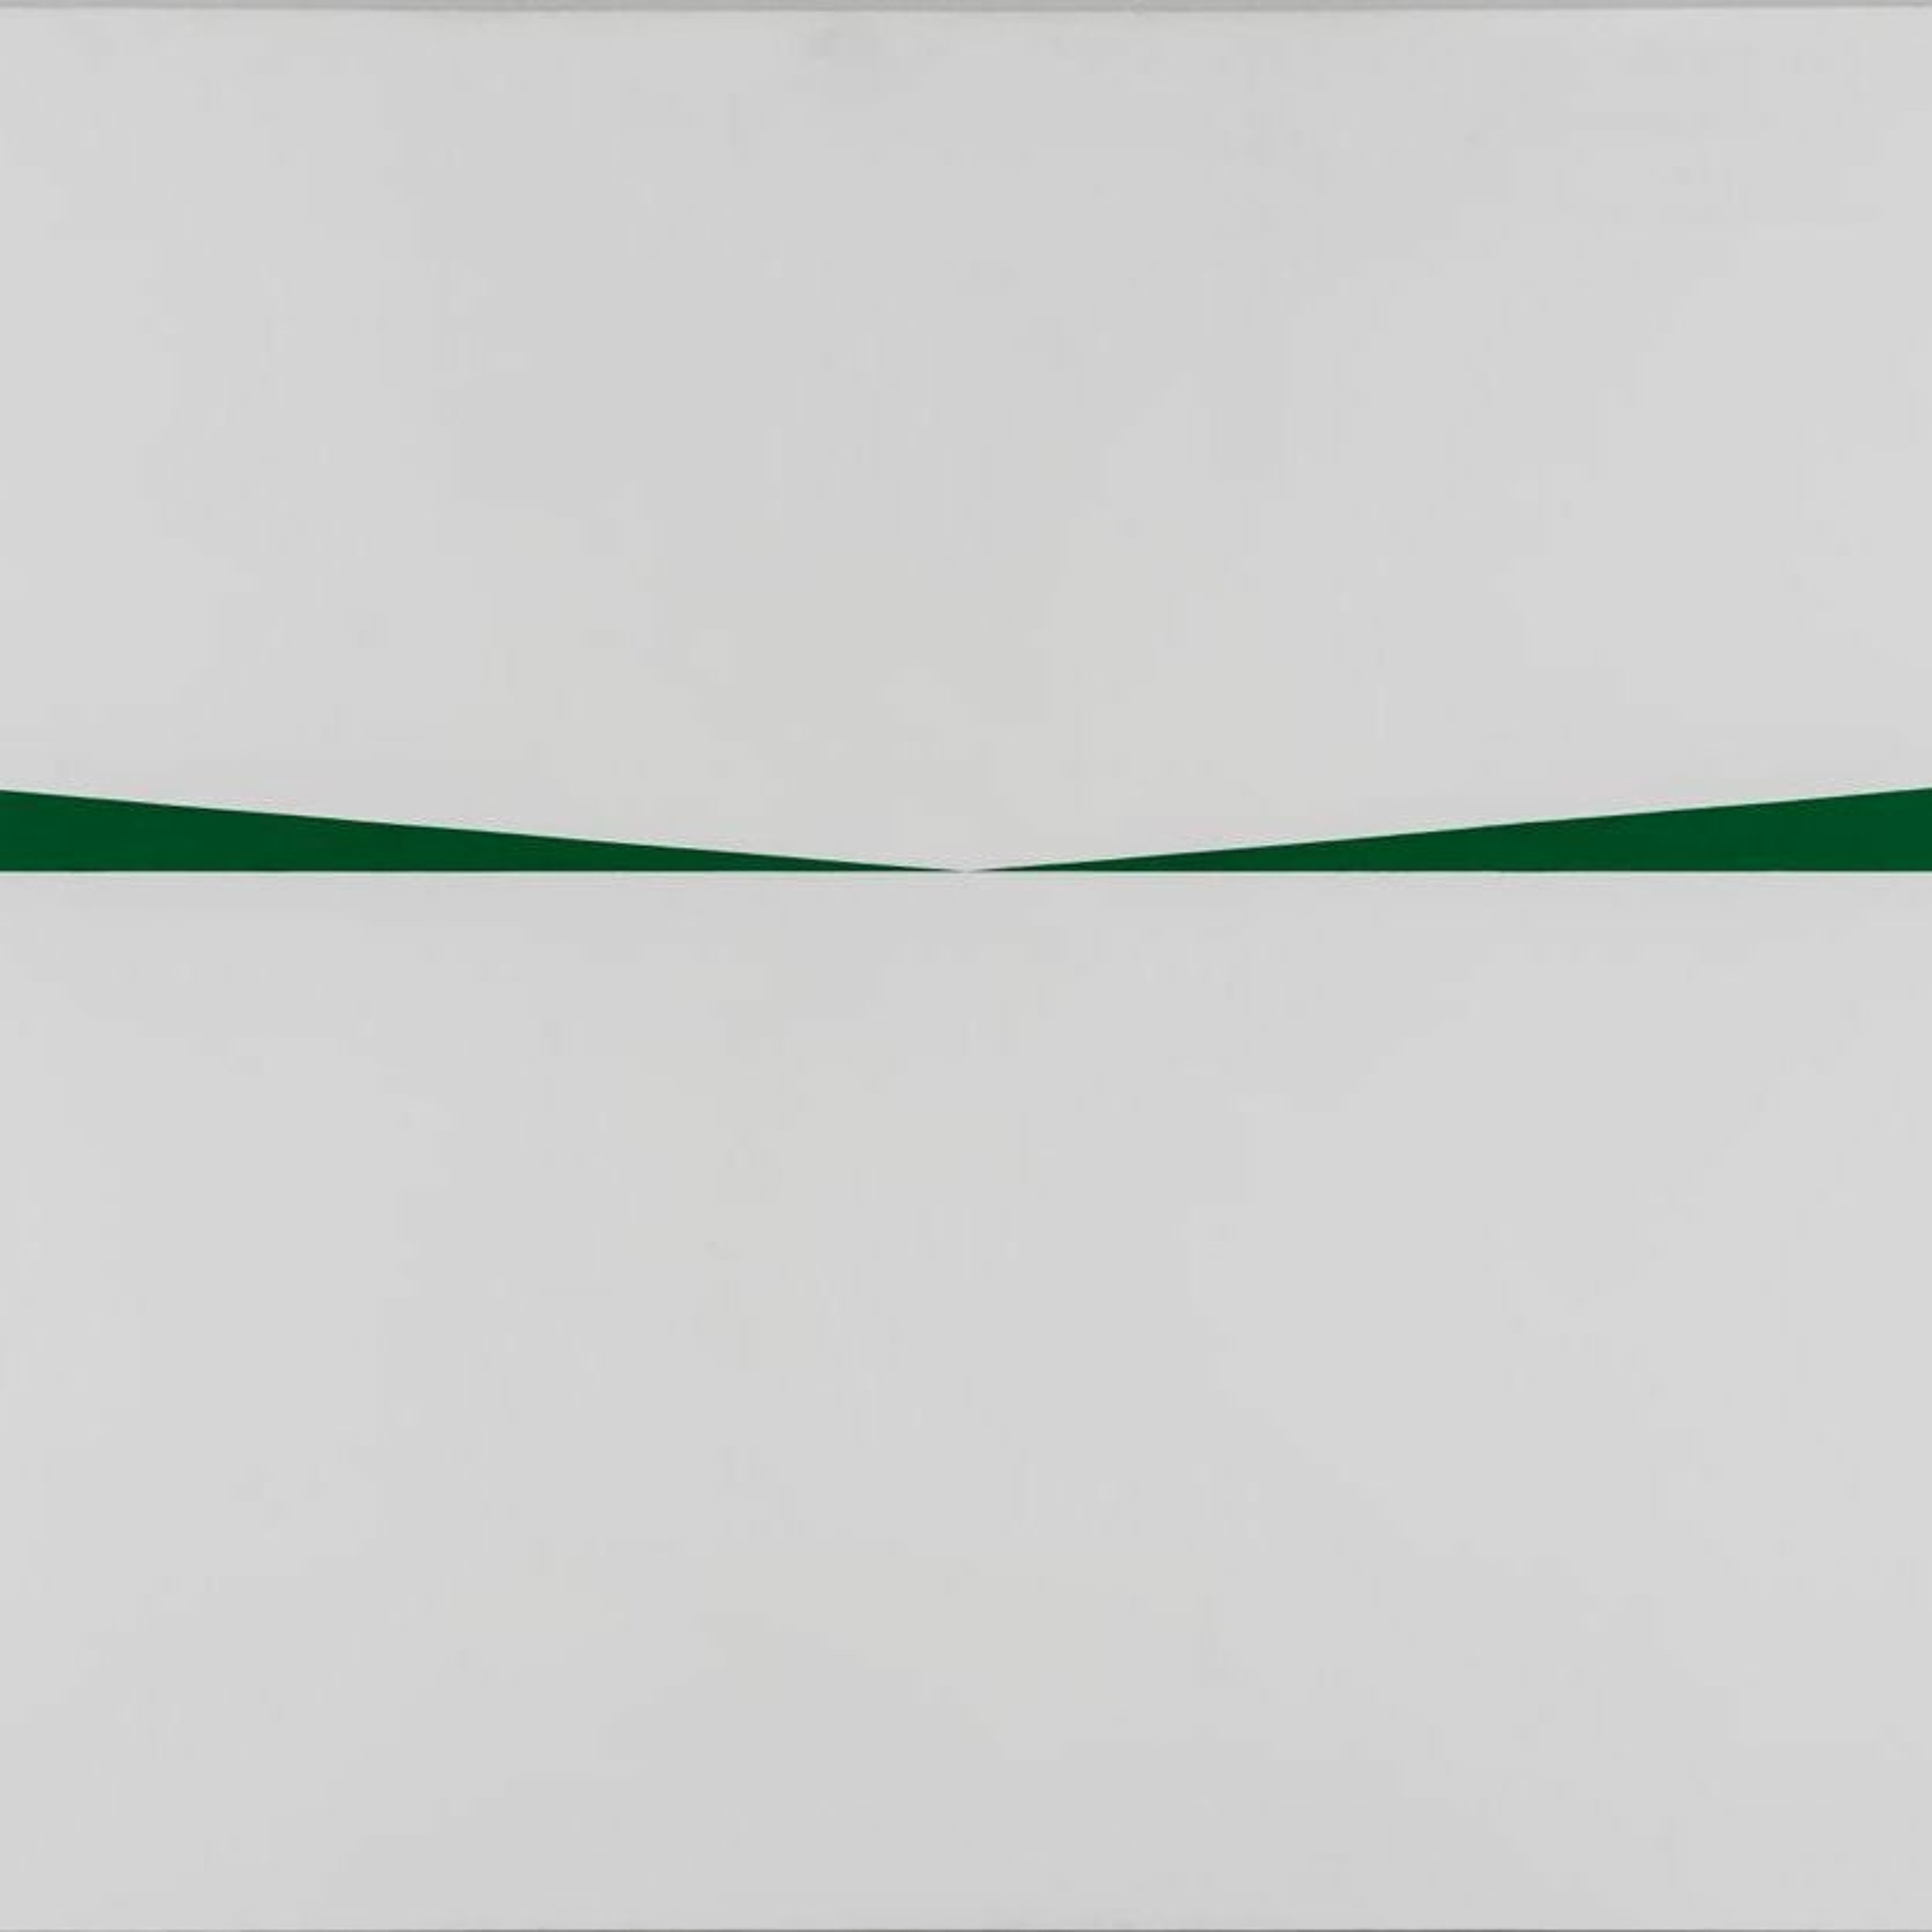 Ep. 43 - Carmen Herrera's "Blanco y Verde (no. 1)" (1962)